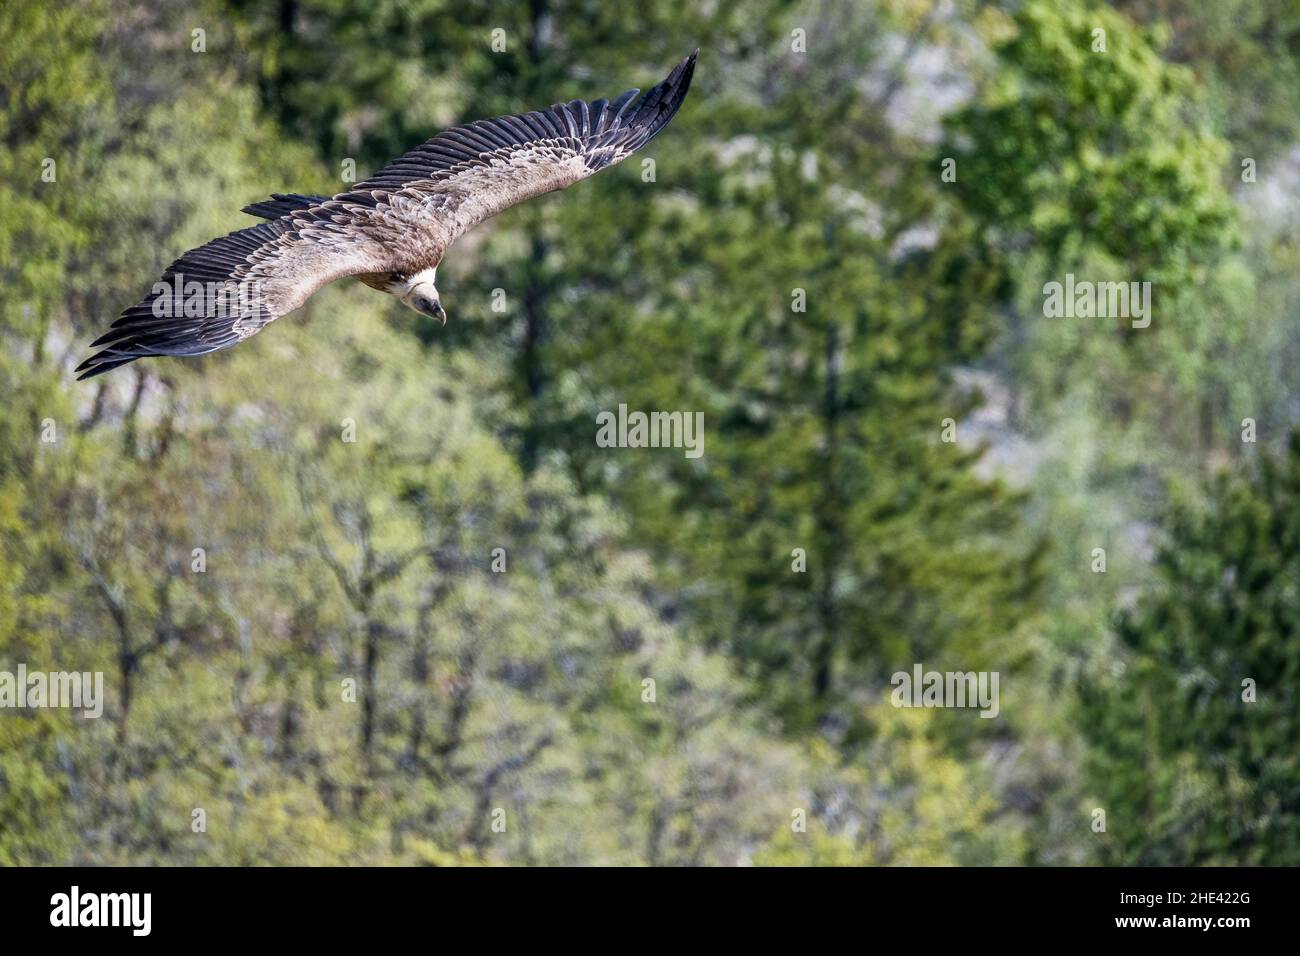 Griffon Vulture (Gyps fulvus), in flight. Stock Photo